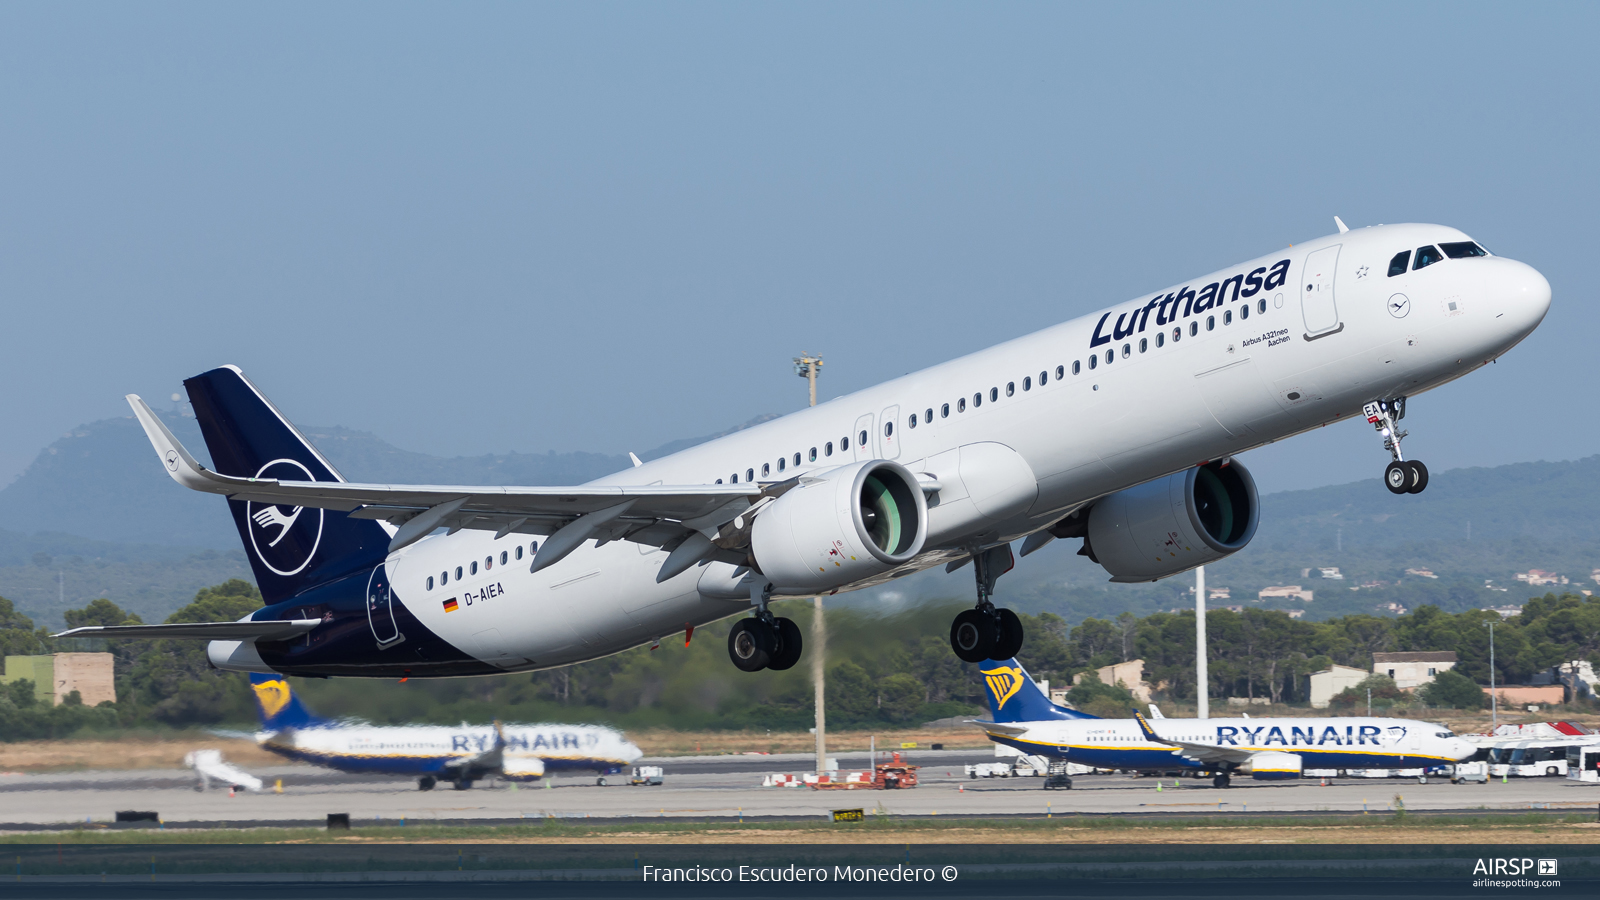 Lufthansa  Airbus A321neo  D-AIEA